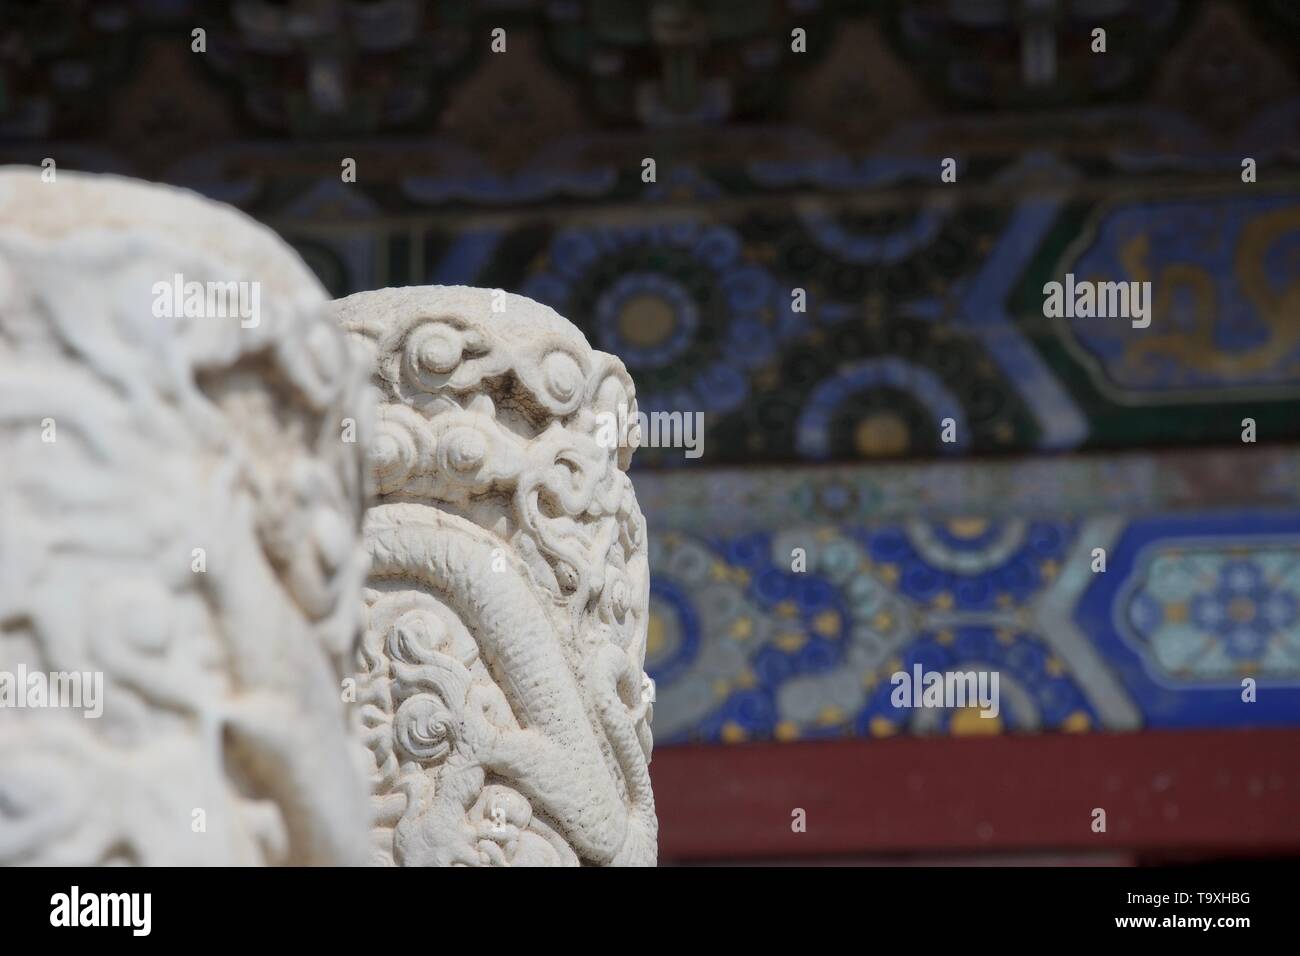 Detail an einer chinesischen Tempel - Aufwändig weißer Marmor Säule im Fokus geschnitzt; Blau komplexe bemalte Wand im Hintergrund Stockfoto